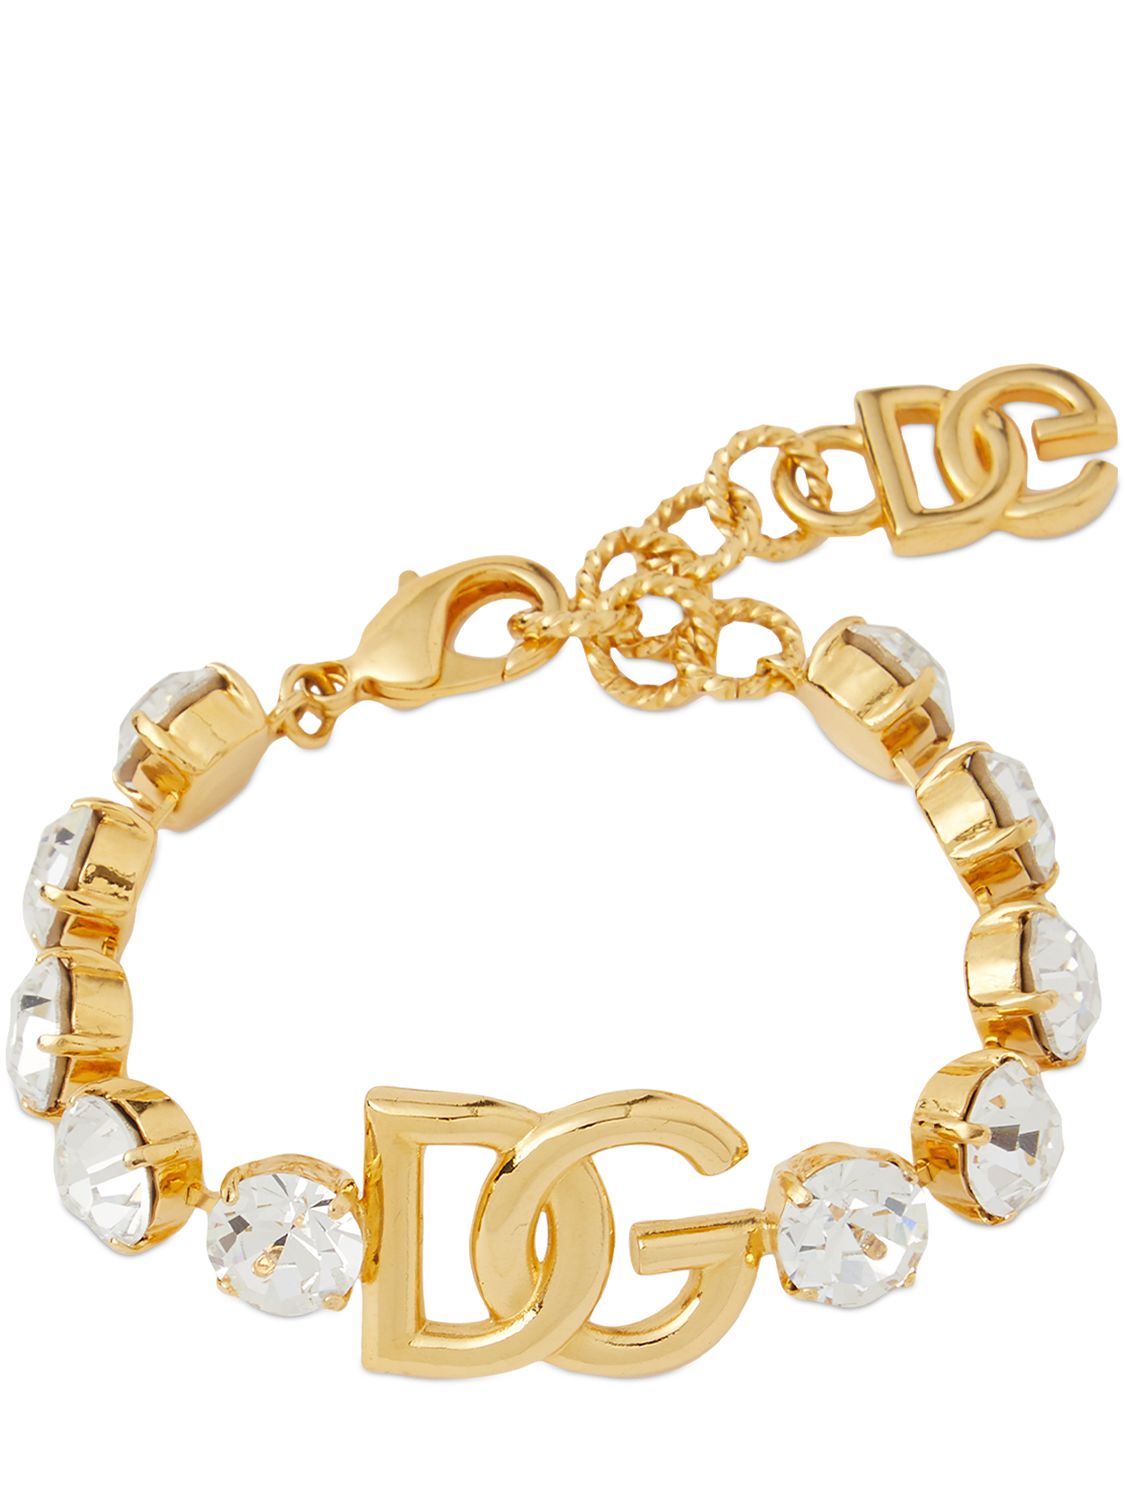 Dg Crystal Chain Bracelet